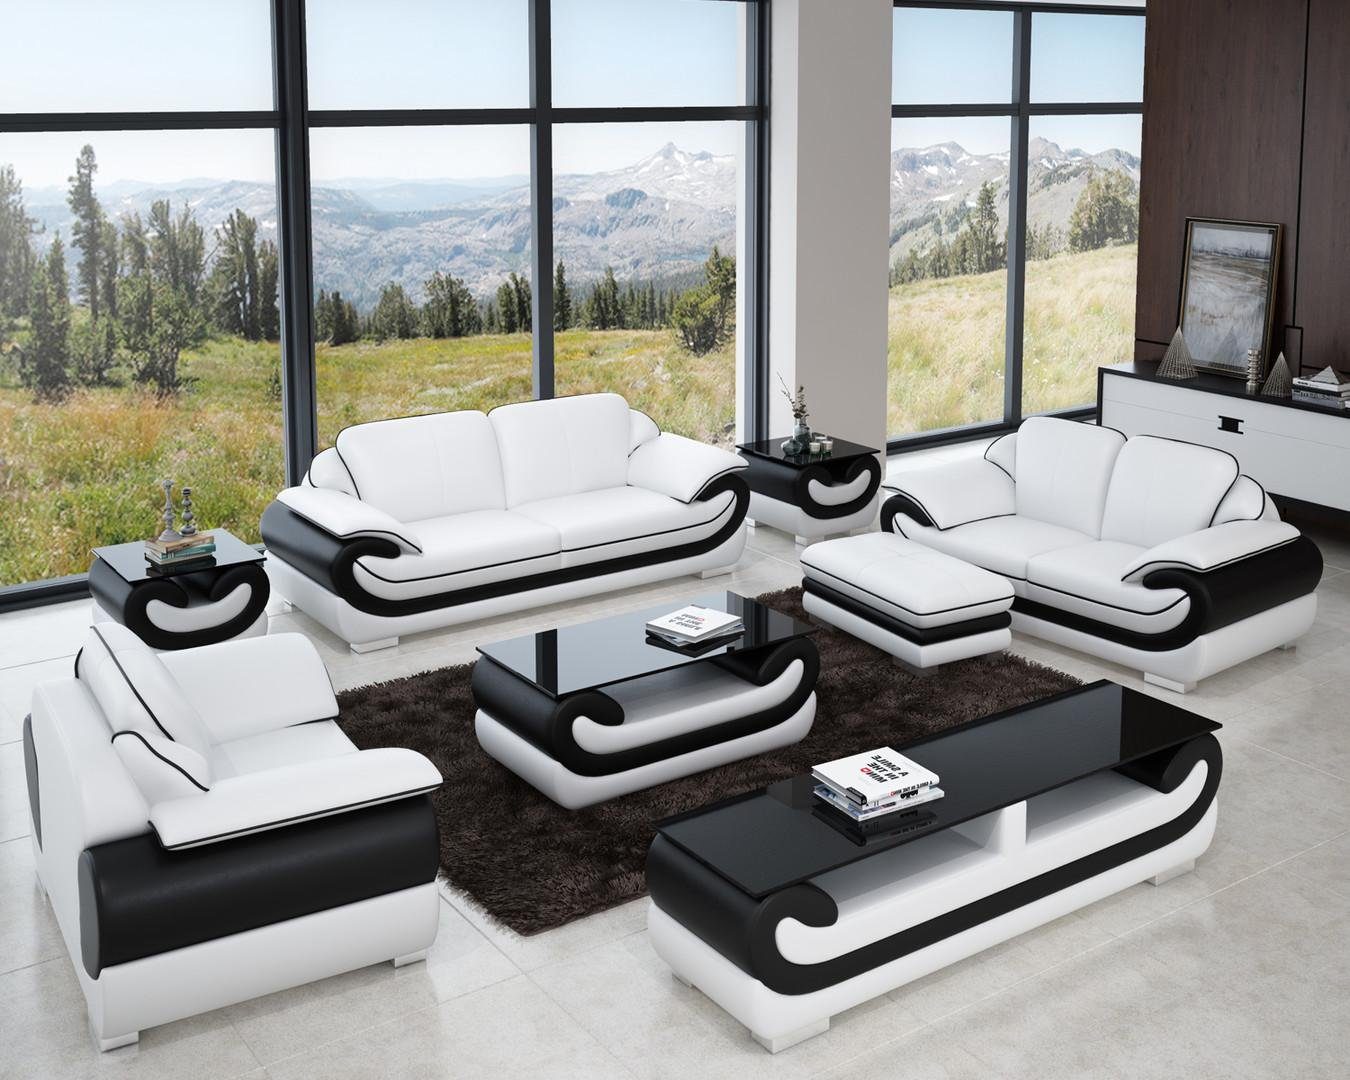 JVmoebel Sofa Sofagarnitur 3+2+1 Sitzer + Hocker Set Polstersofa Couch Designersofa, Made in Europe Weiß/Schwarz